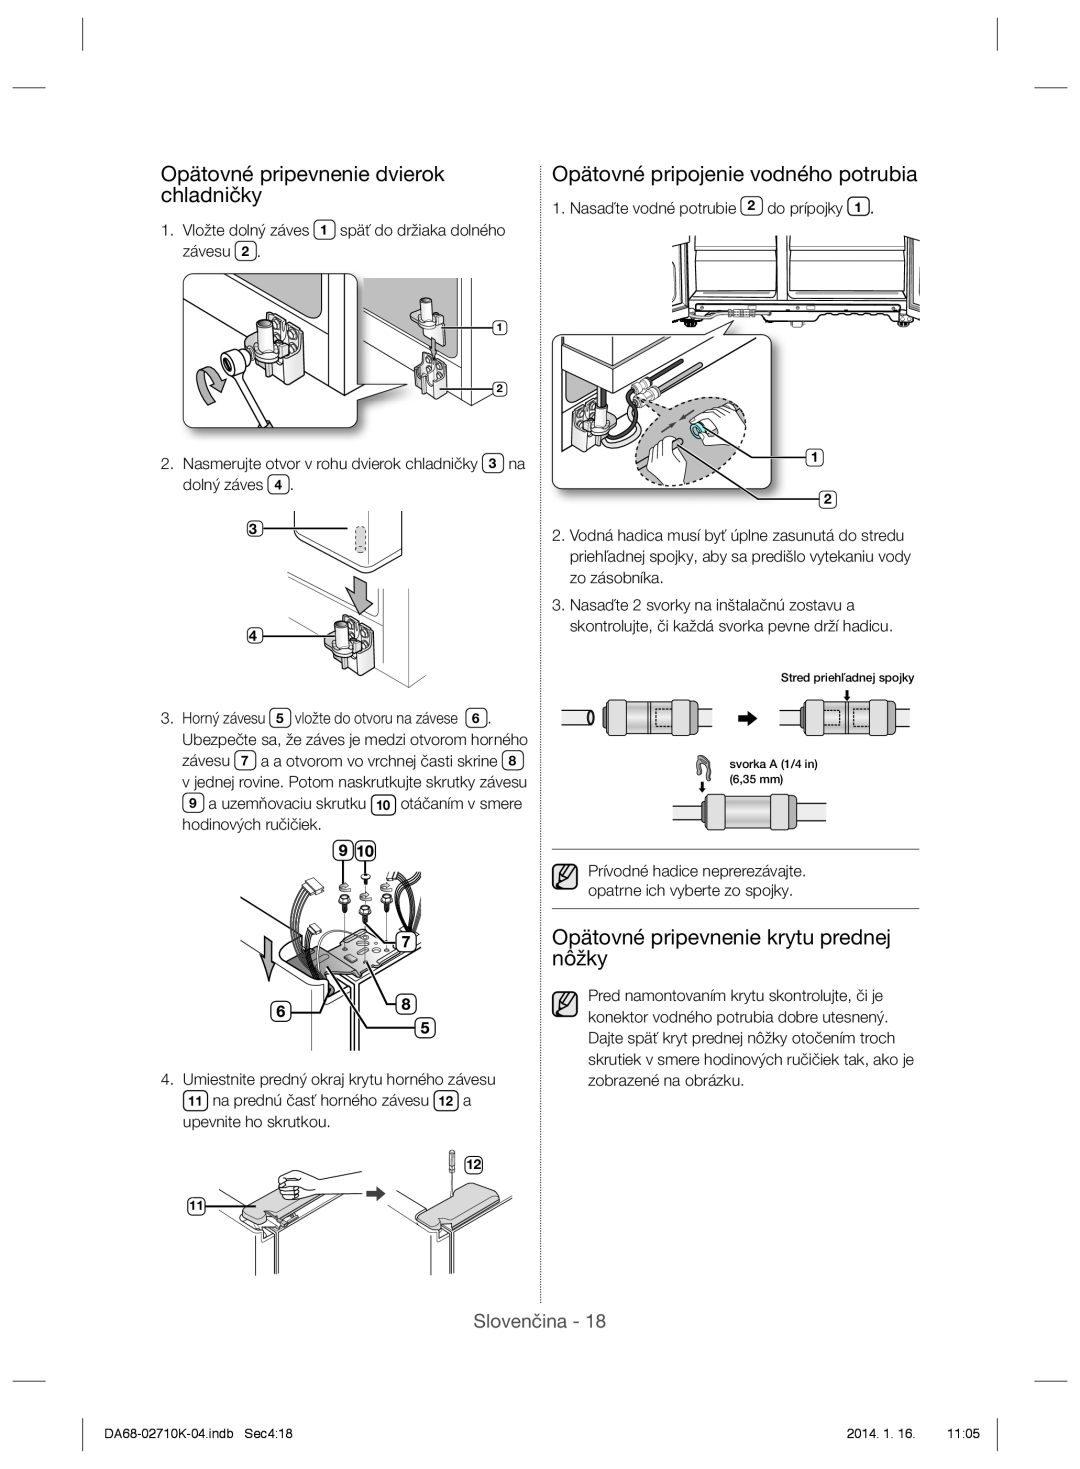 Samsung RS7577THCSL/EF manual Opätovné pripevnenie dvierok, Opätovné pripojenie vodného potrubia, chladničky, Slovenčina 